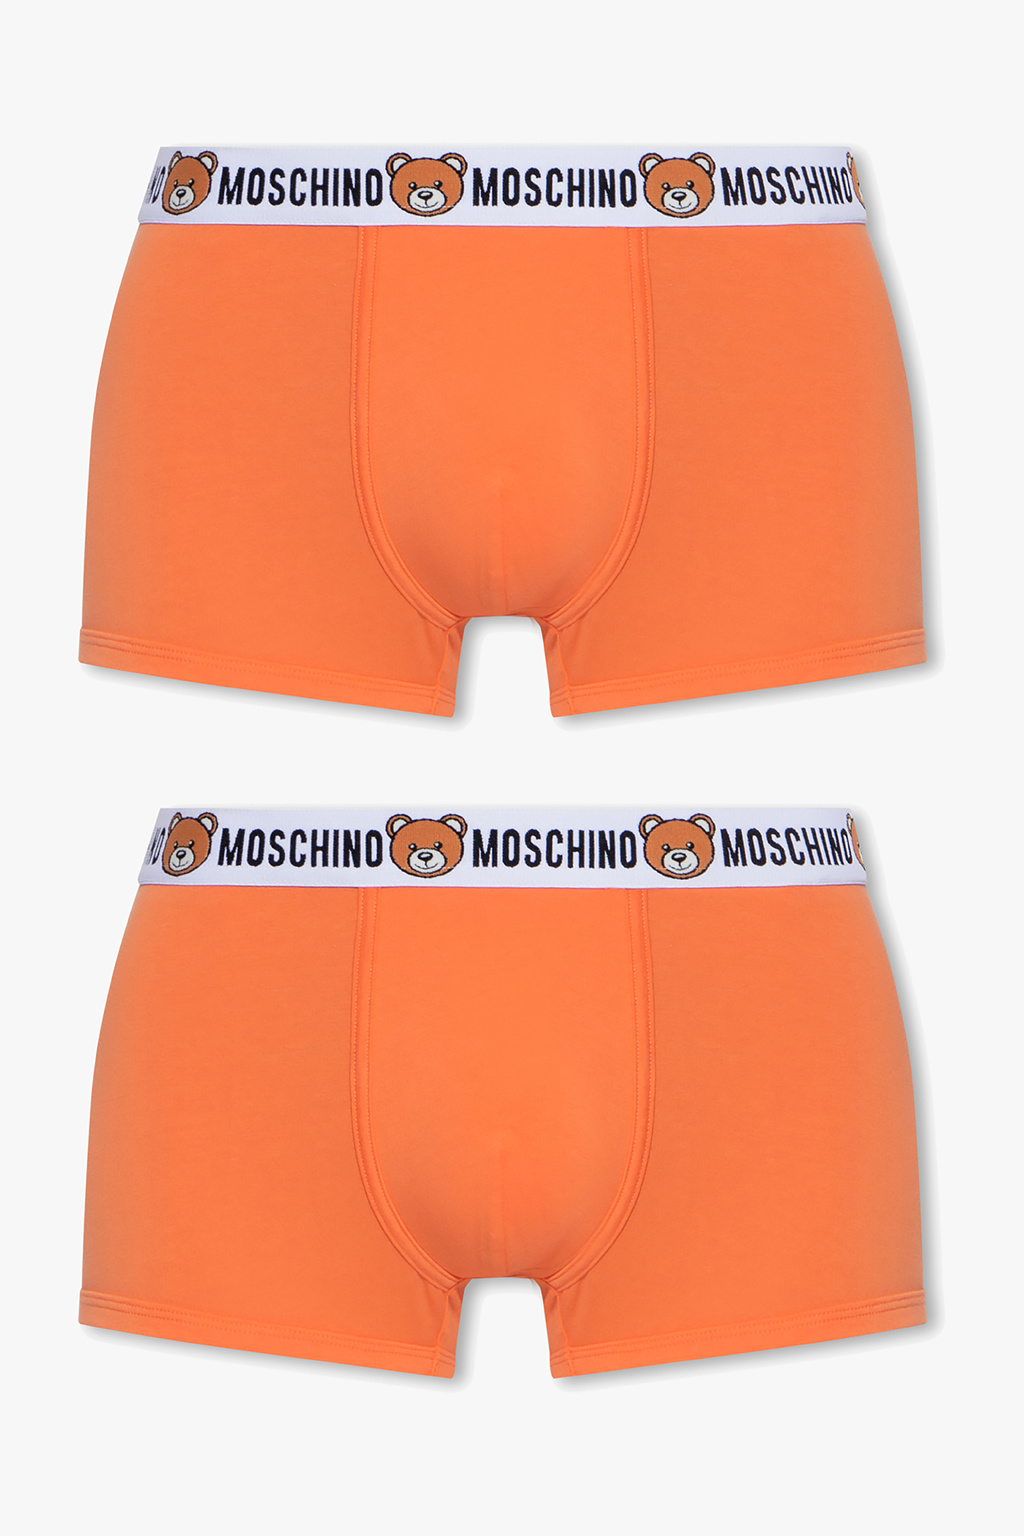 Orange Boxers 2-pack Moschino - Vitkac Canada